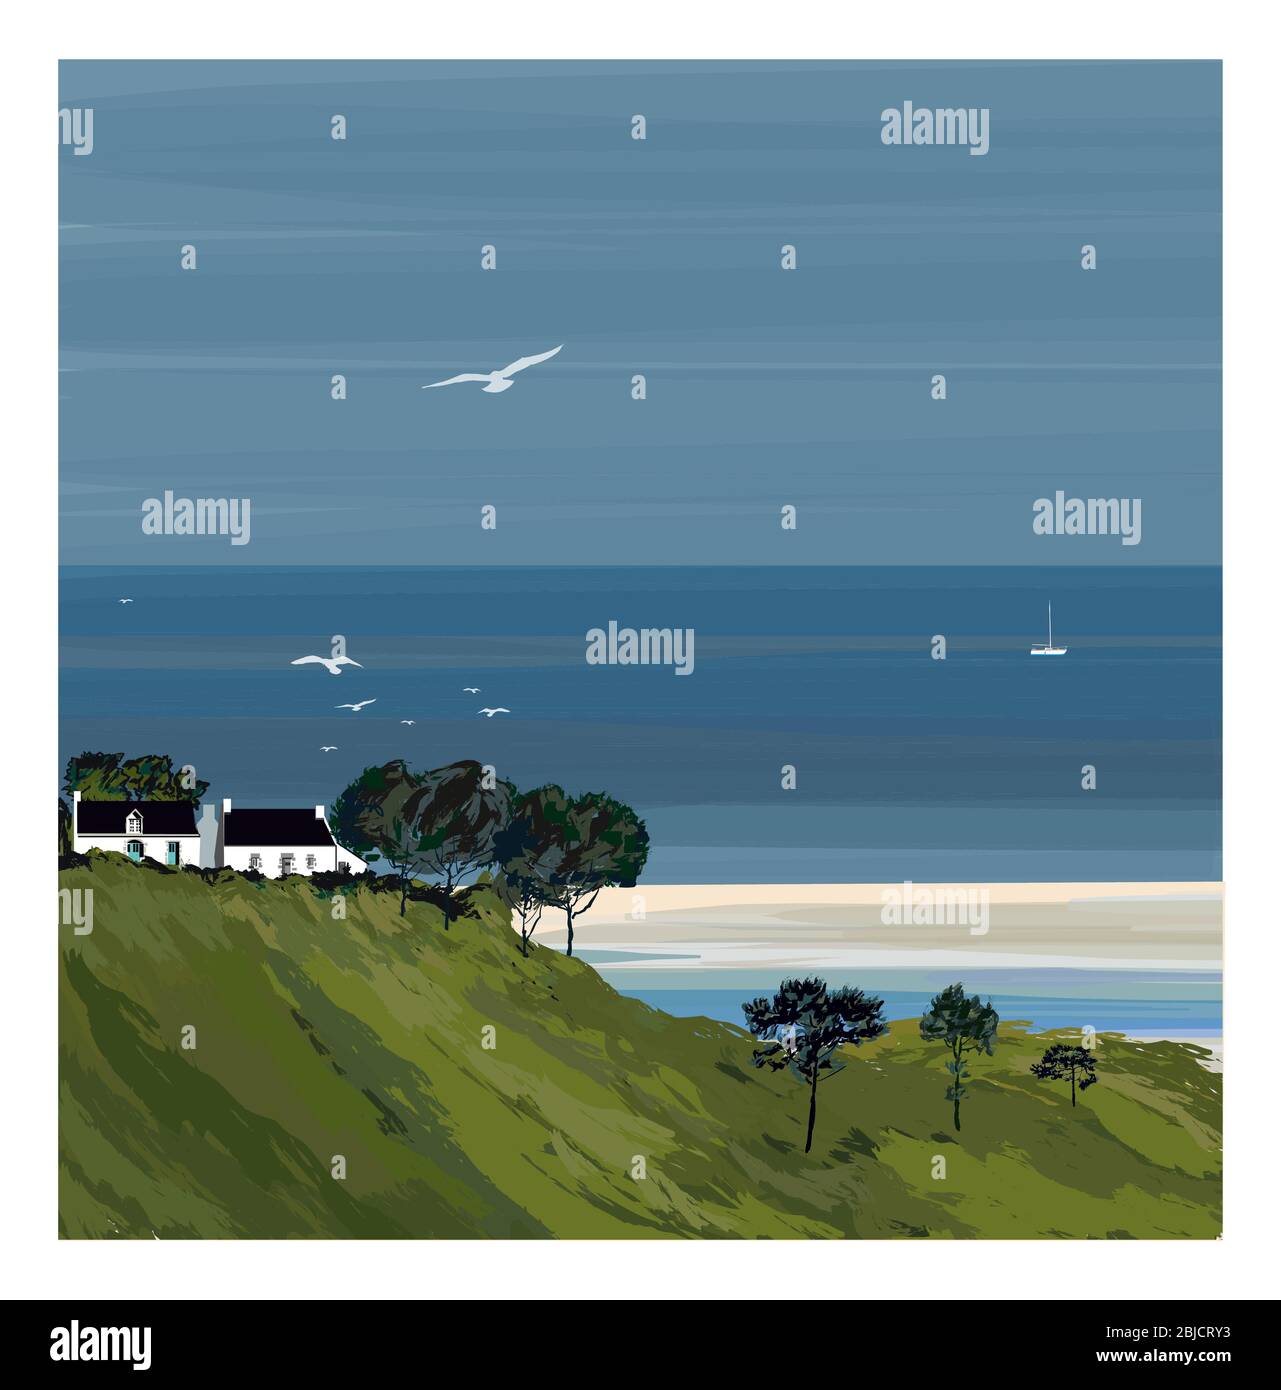 Illustrazione di un paesaggio costiero colorato in Bretagna Francia - illustrazione vettoriale (ideale per la stampa su tessuto o carta, poster o carta da parati, h Illustrazione Vettoriale